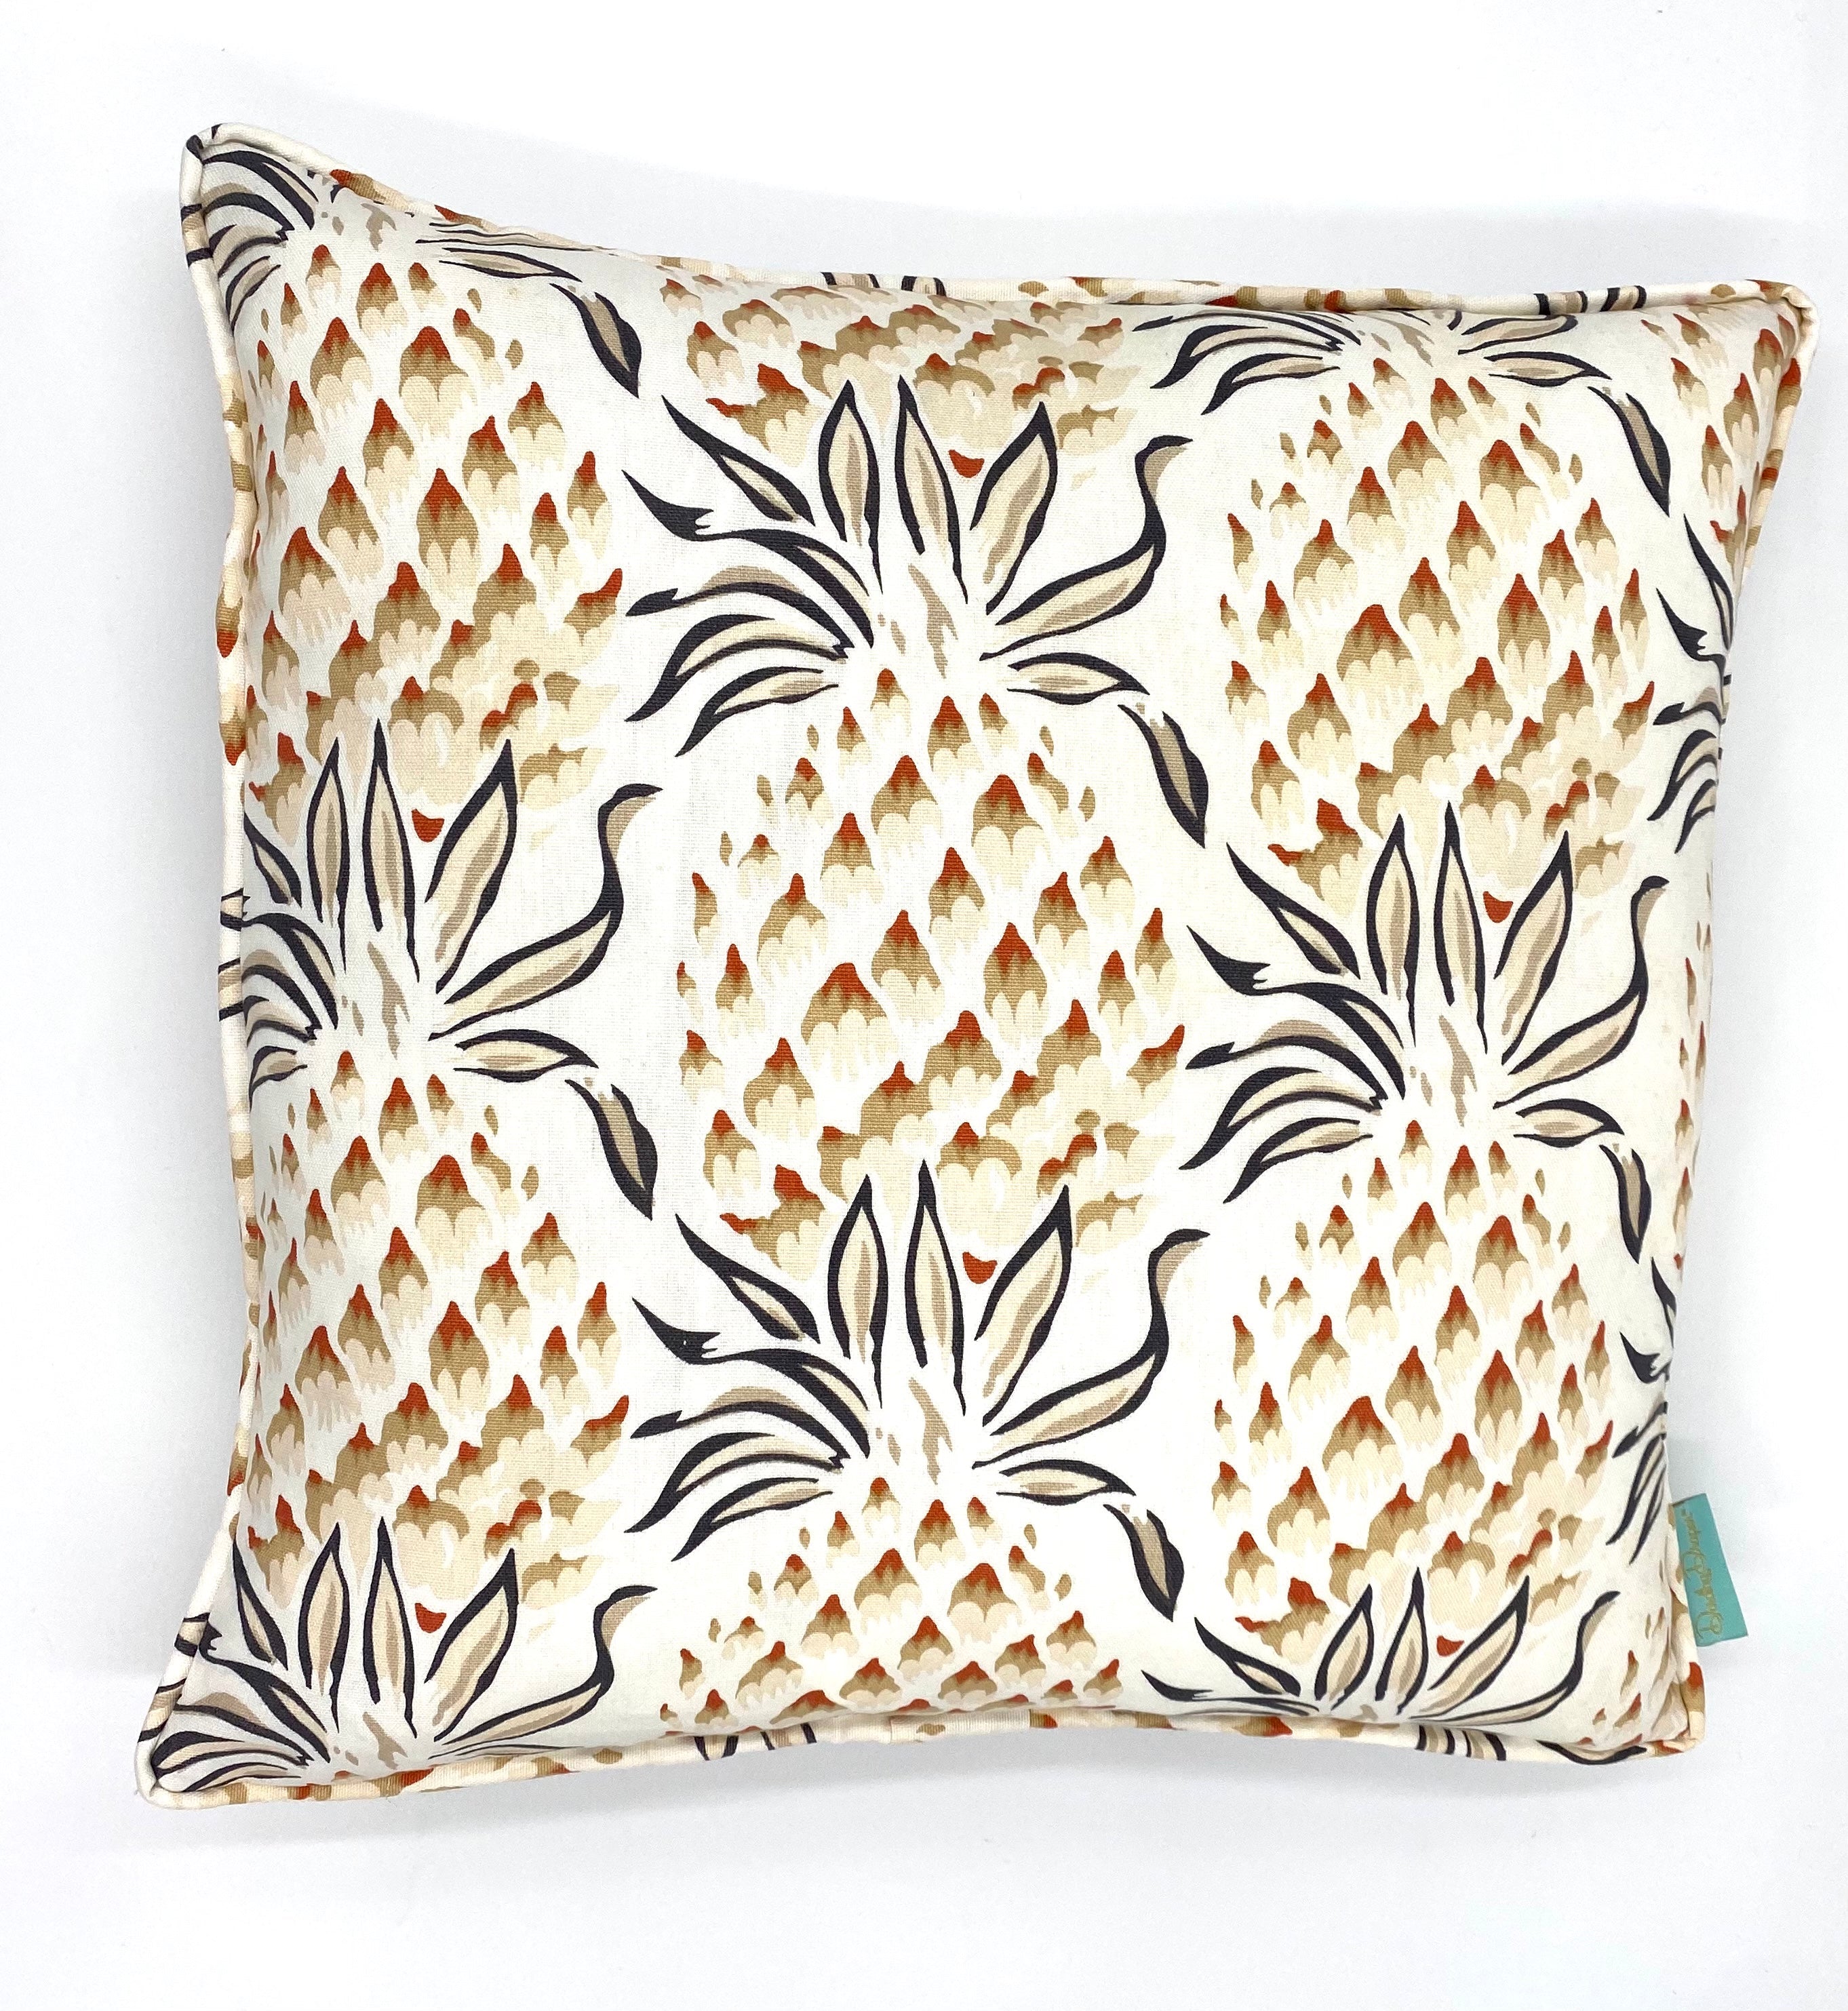 Lanai Pineapple Throw Pillow - Brown